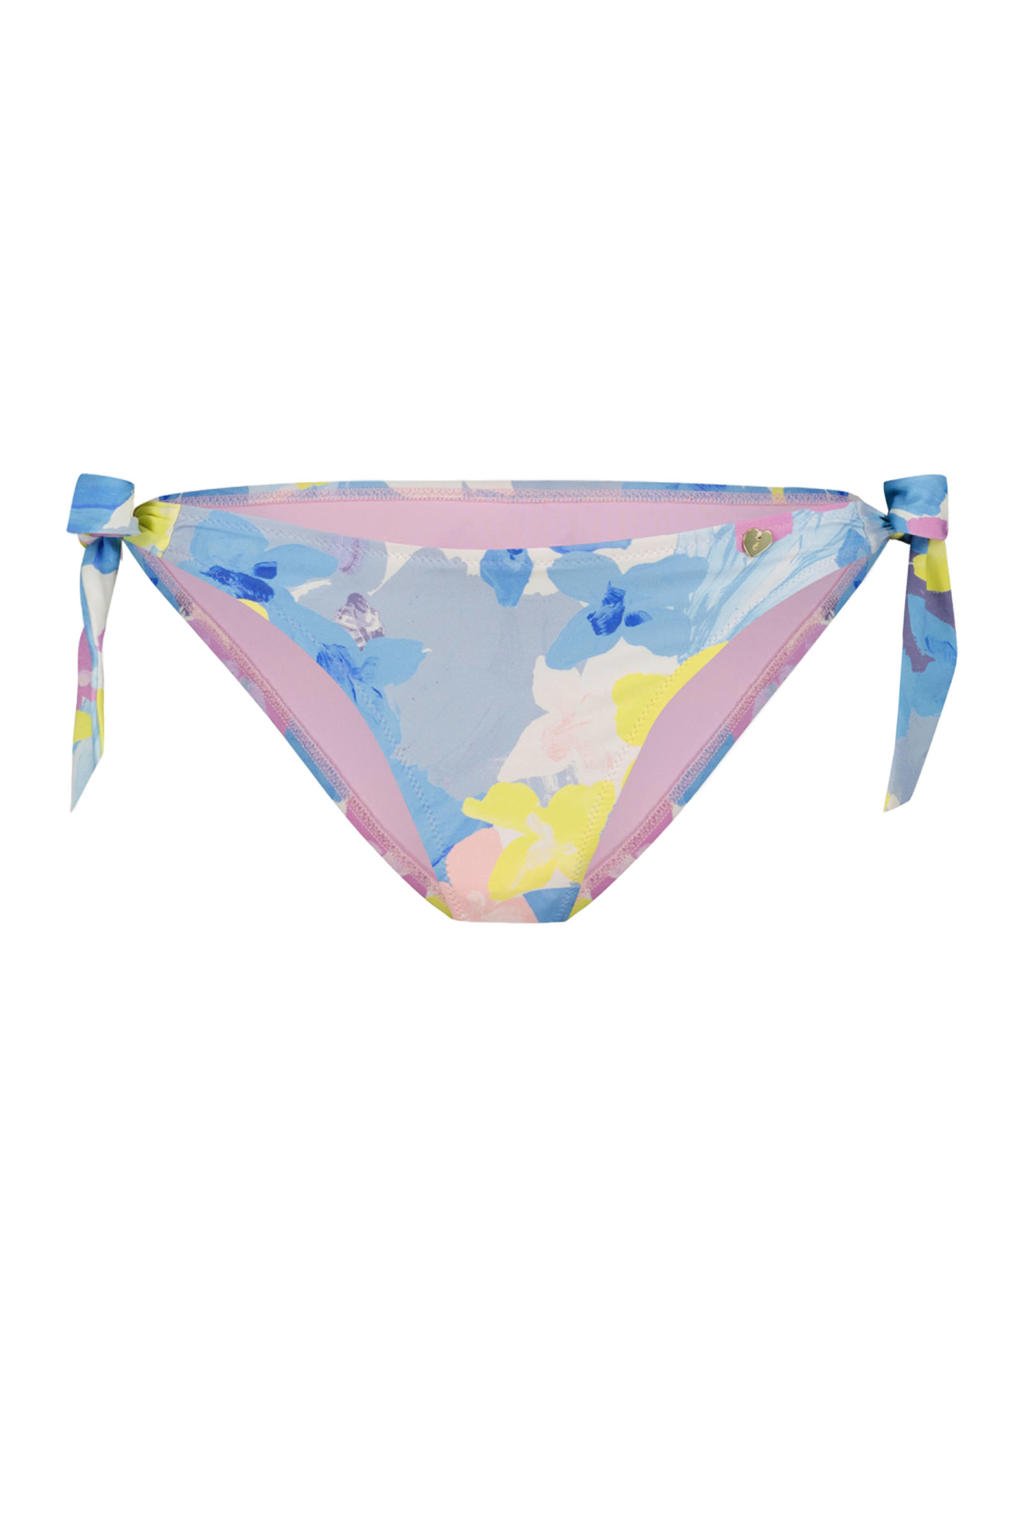 Fabienne Chapot strik bikinibroekje Heather blauw/geel/roze | wehkamp